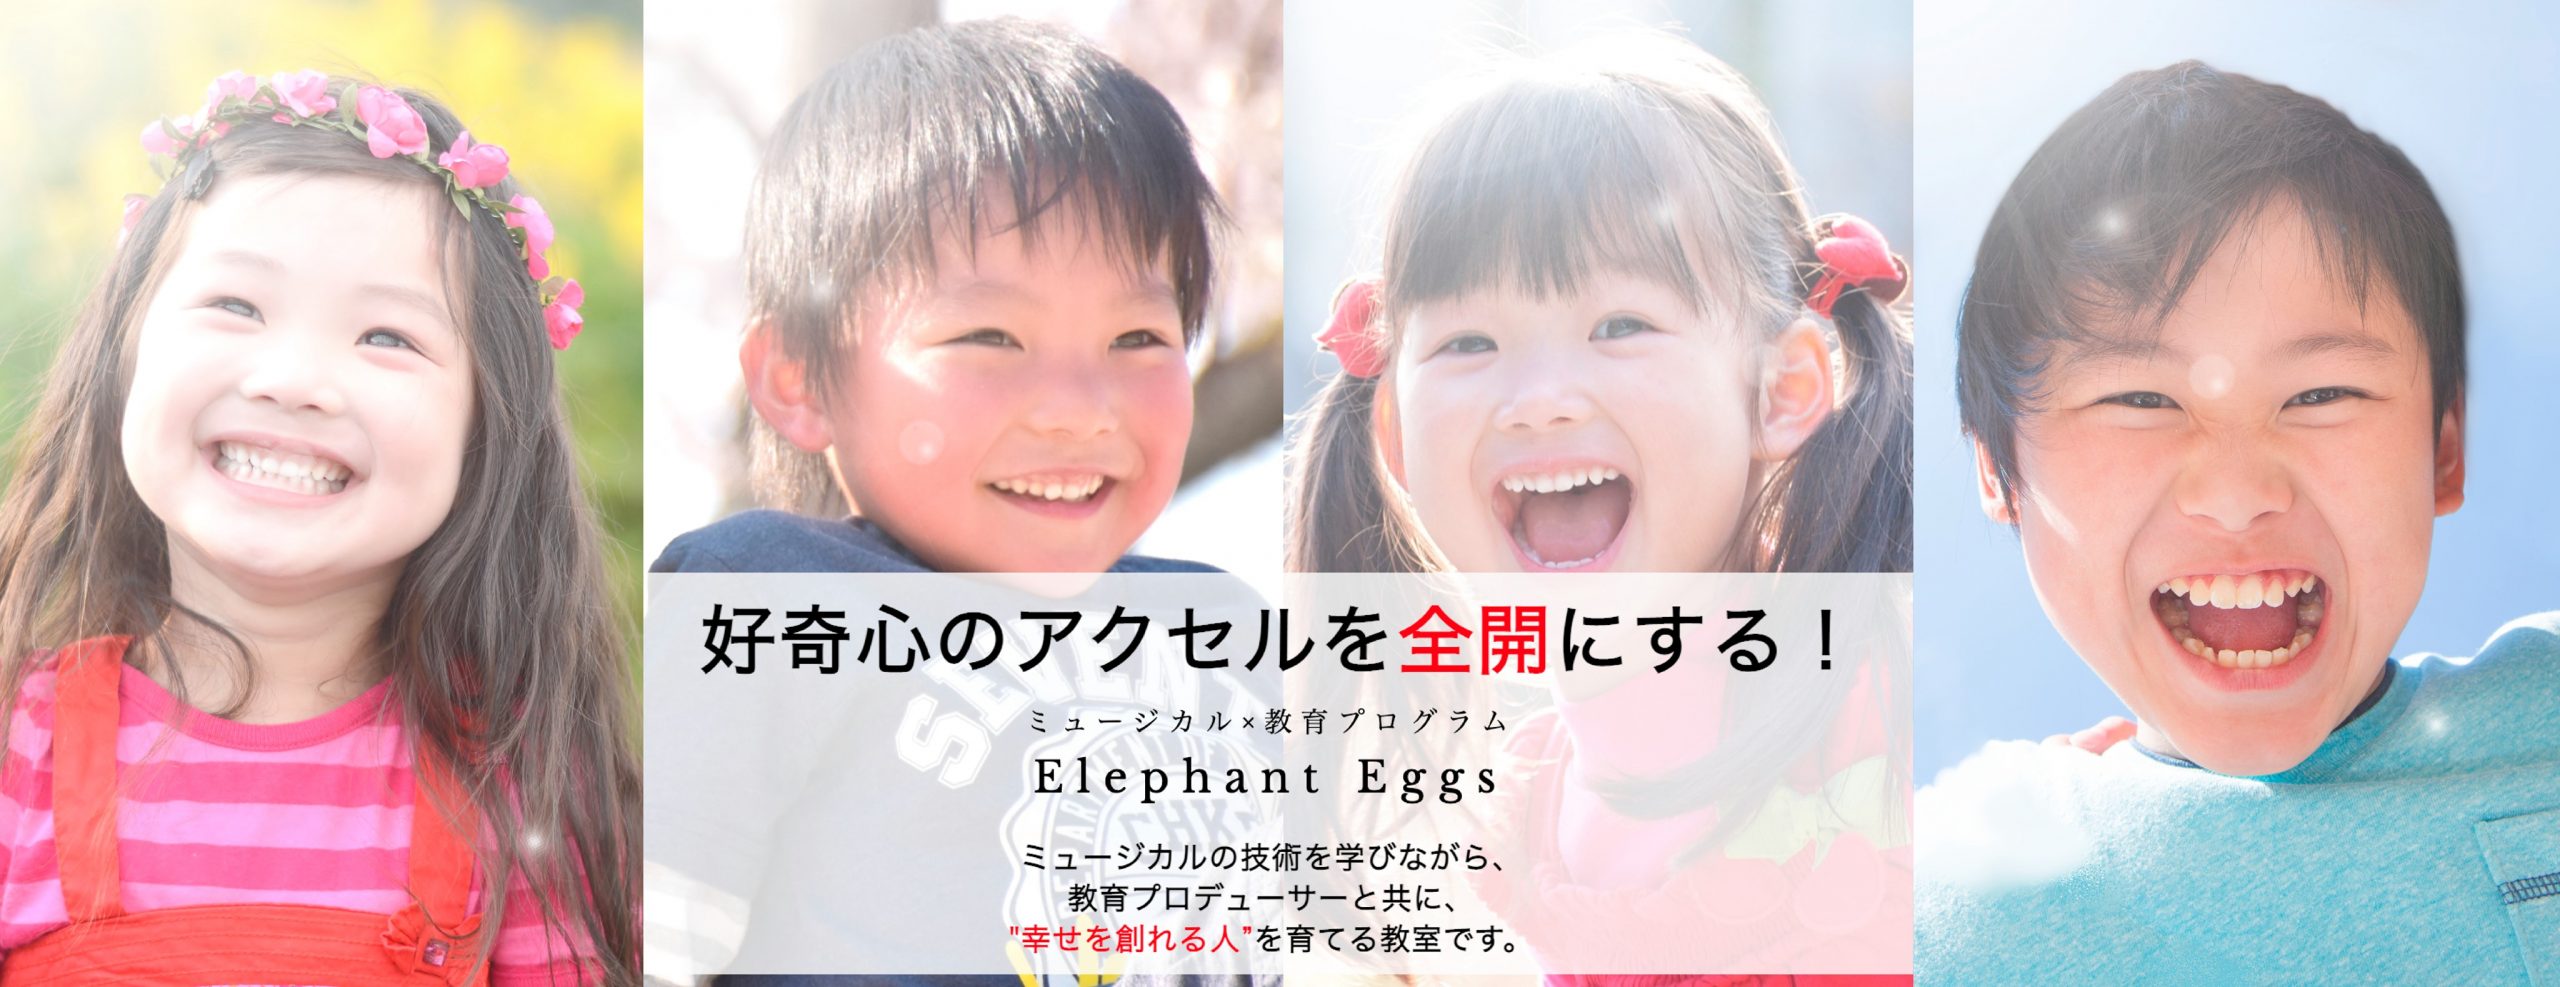 ミュージカル教室『Elephant Eggs』の2021年度無料体験レッスン